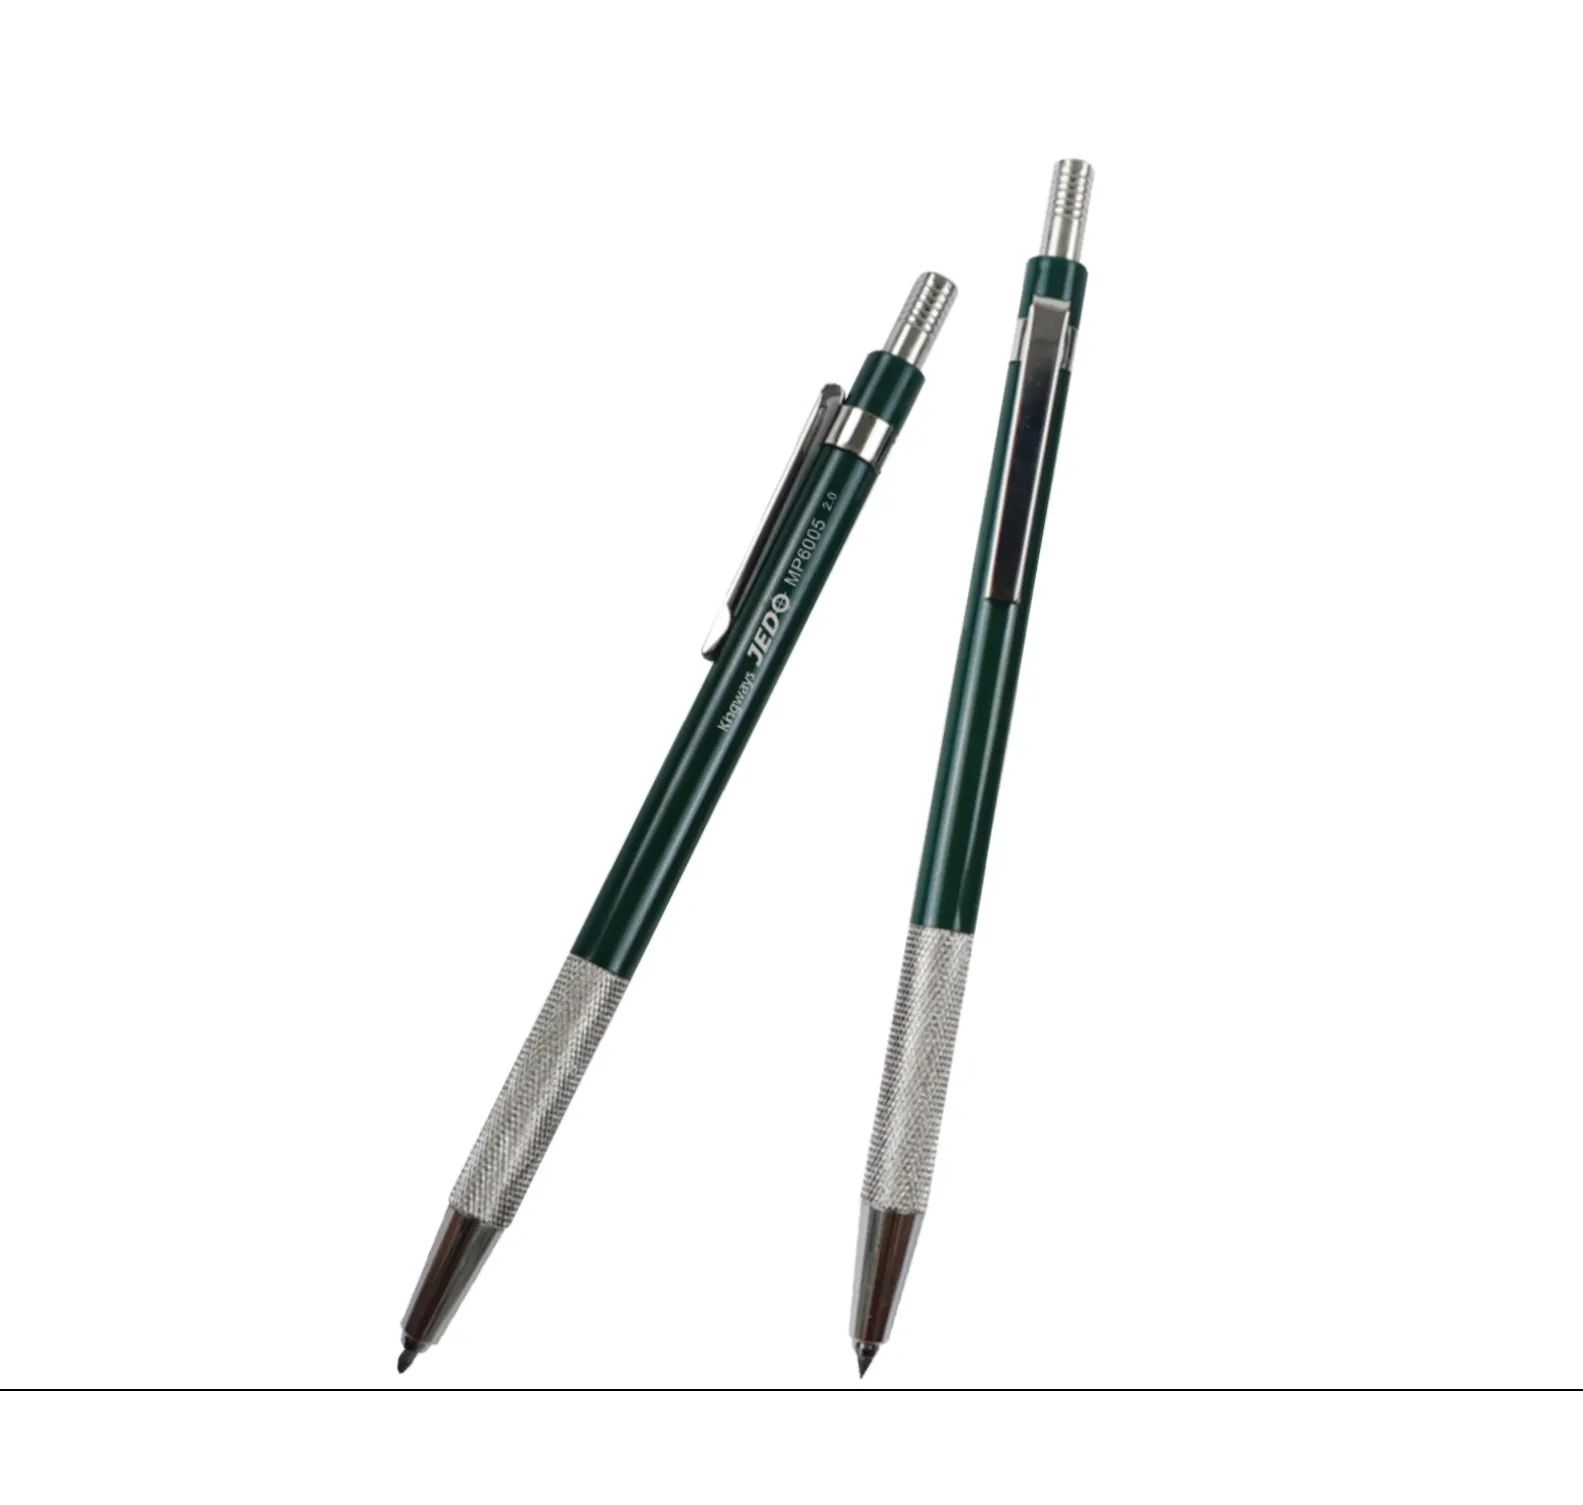 מותאם אישית ירוק צבע מתכת מכאני עיפרון 2.0mm עם מחדד על למעלה טיוטת ציור מתכת מכאני עיפרון ציור 2.0mm